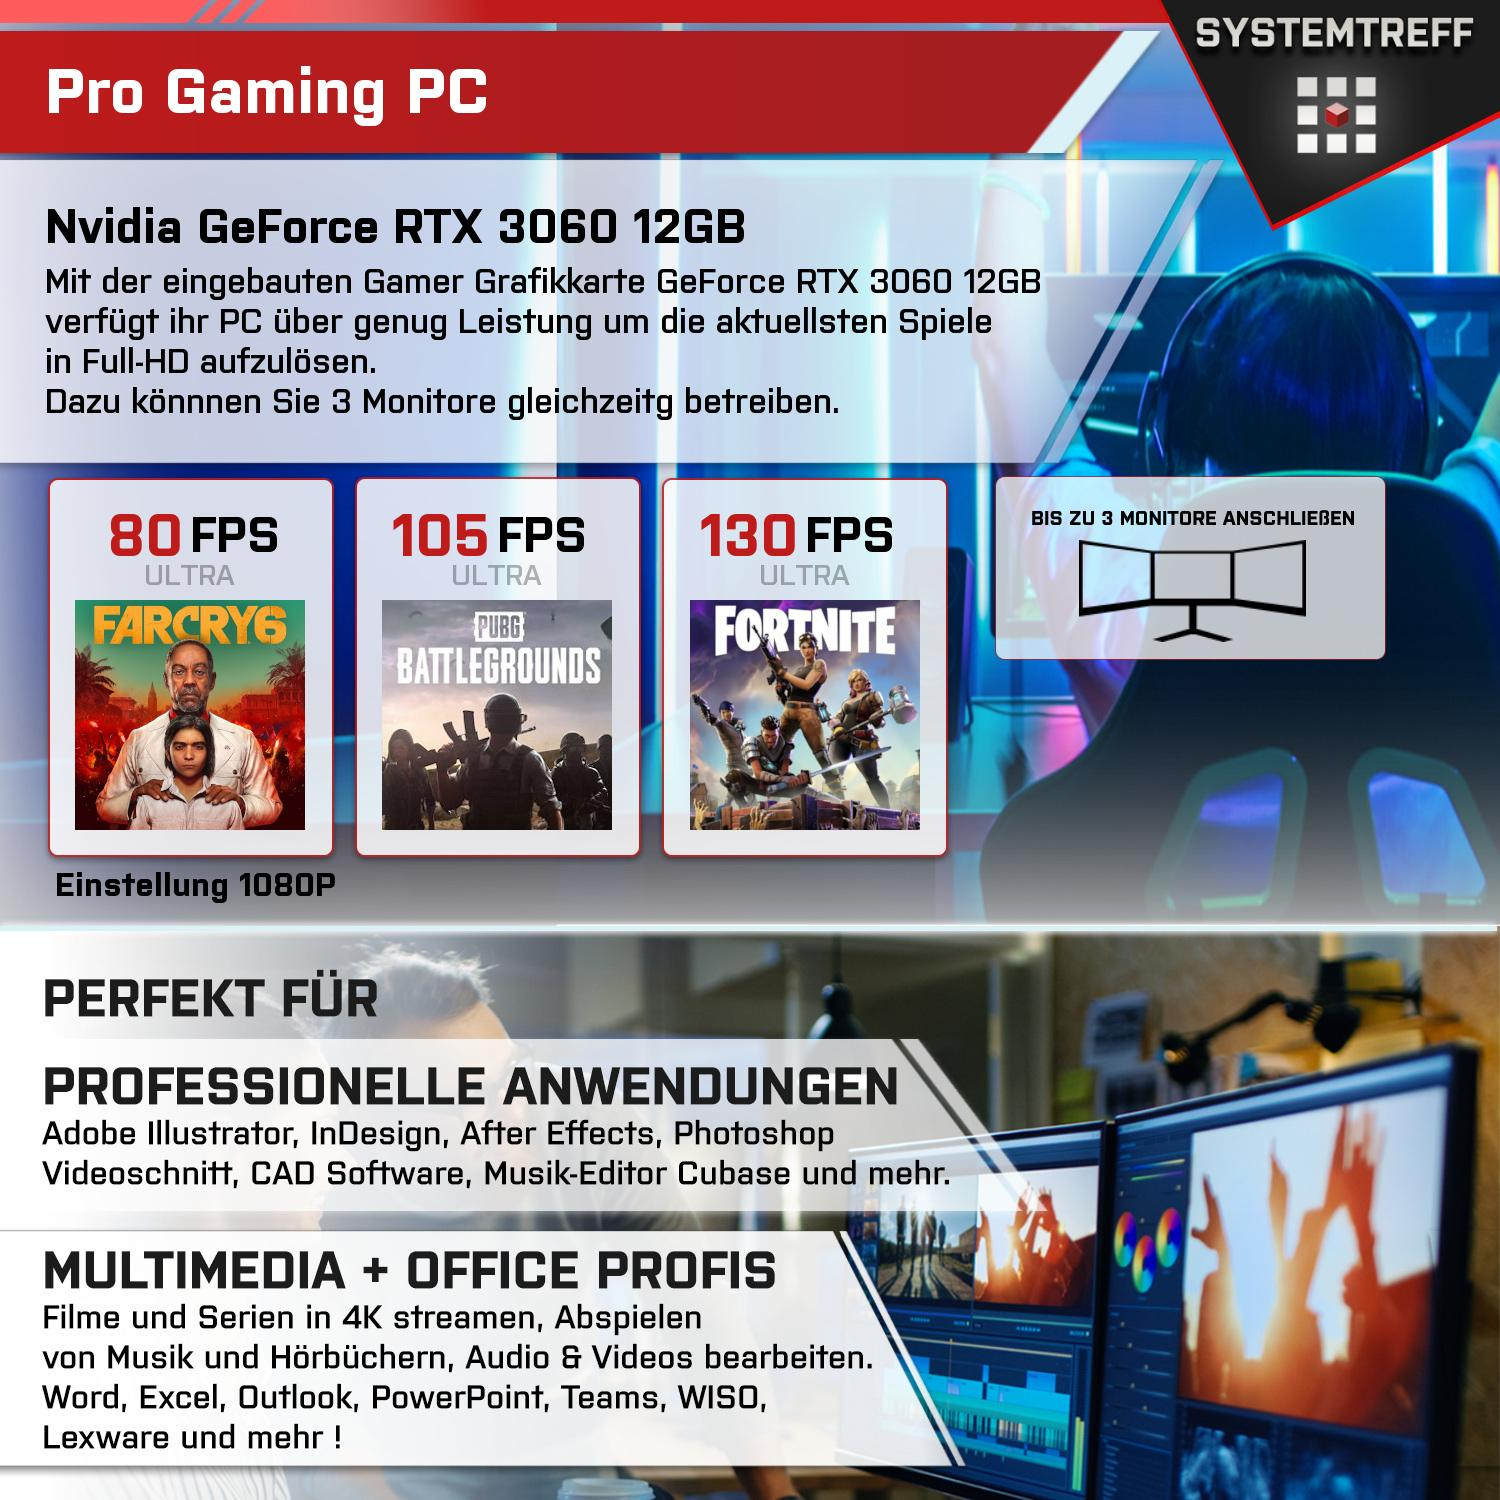 GB PC 12GB 12 mit AMD Komplett Nvidia GB GB RTX Gaming Ryzen 512 5 3060 GeForce RAM, 16 5500, GDDR6, 5500 Komplett mSSD, Prozessor, SYSTEMTREFF